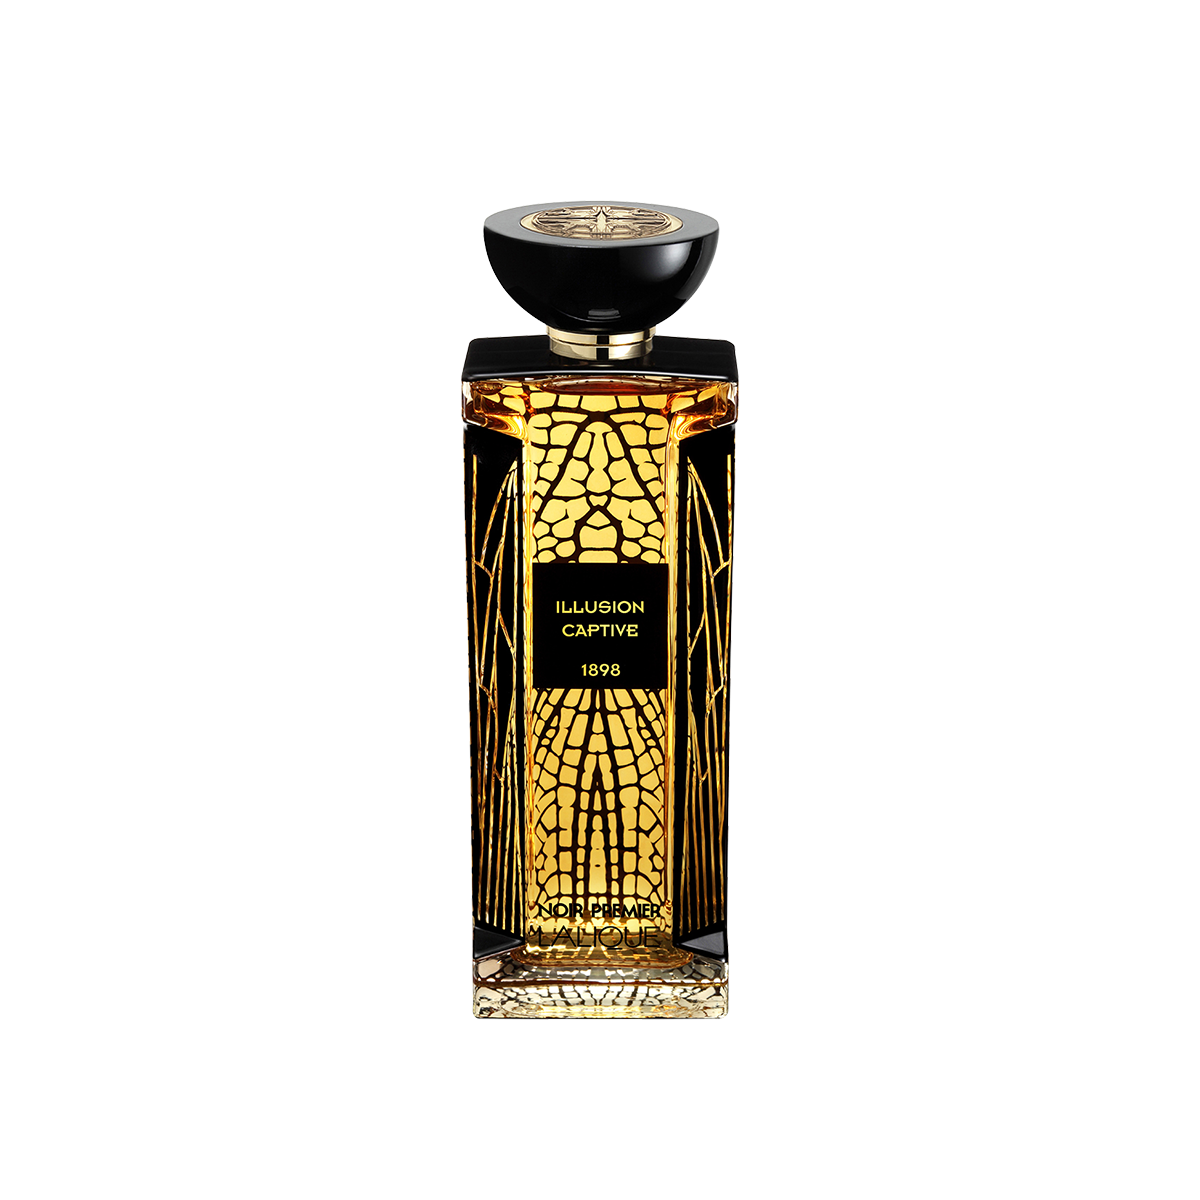 Noir Premier / Illusion Captive 1898<br>Eau de Parfum 100ml